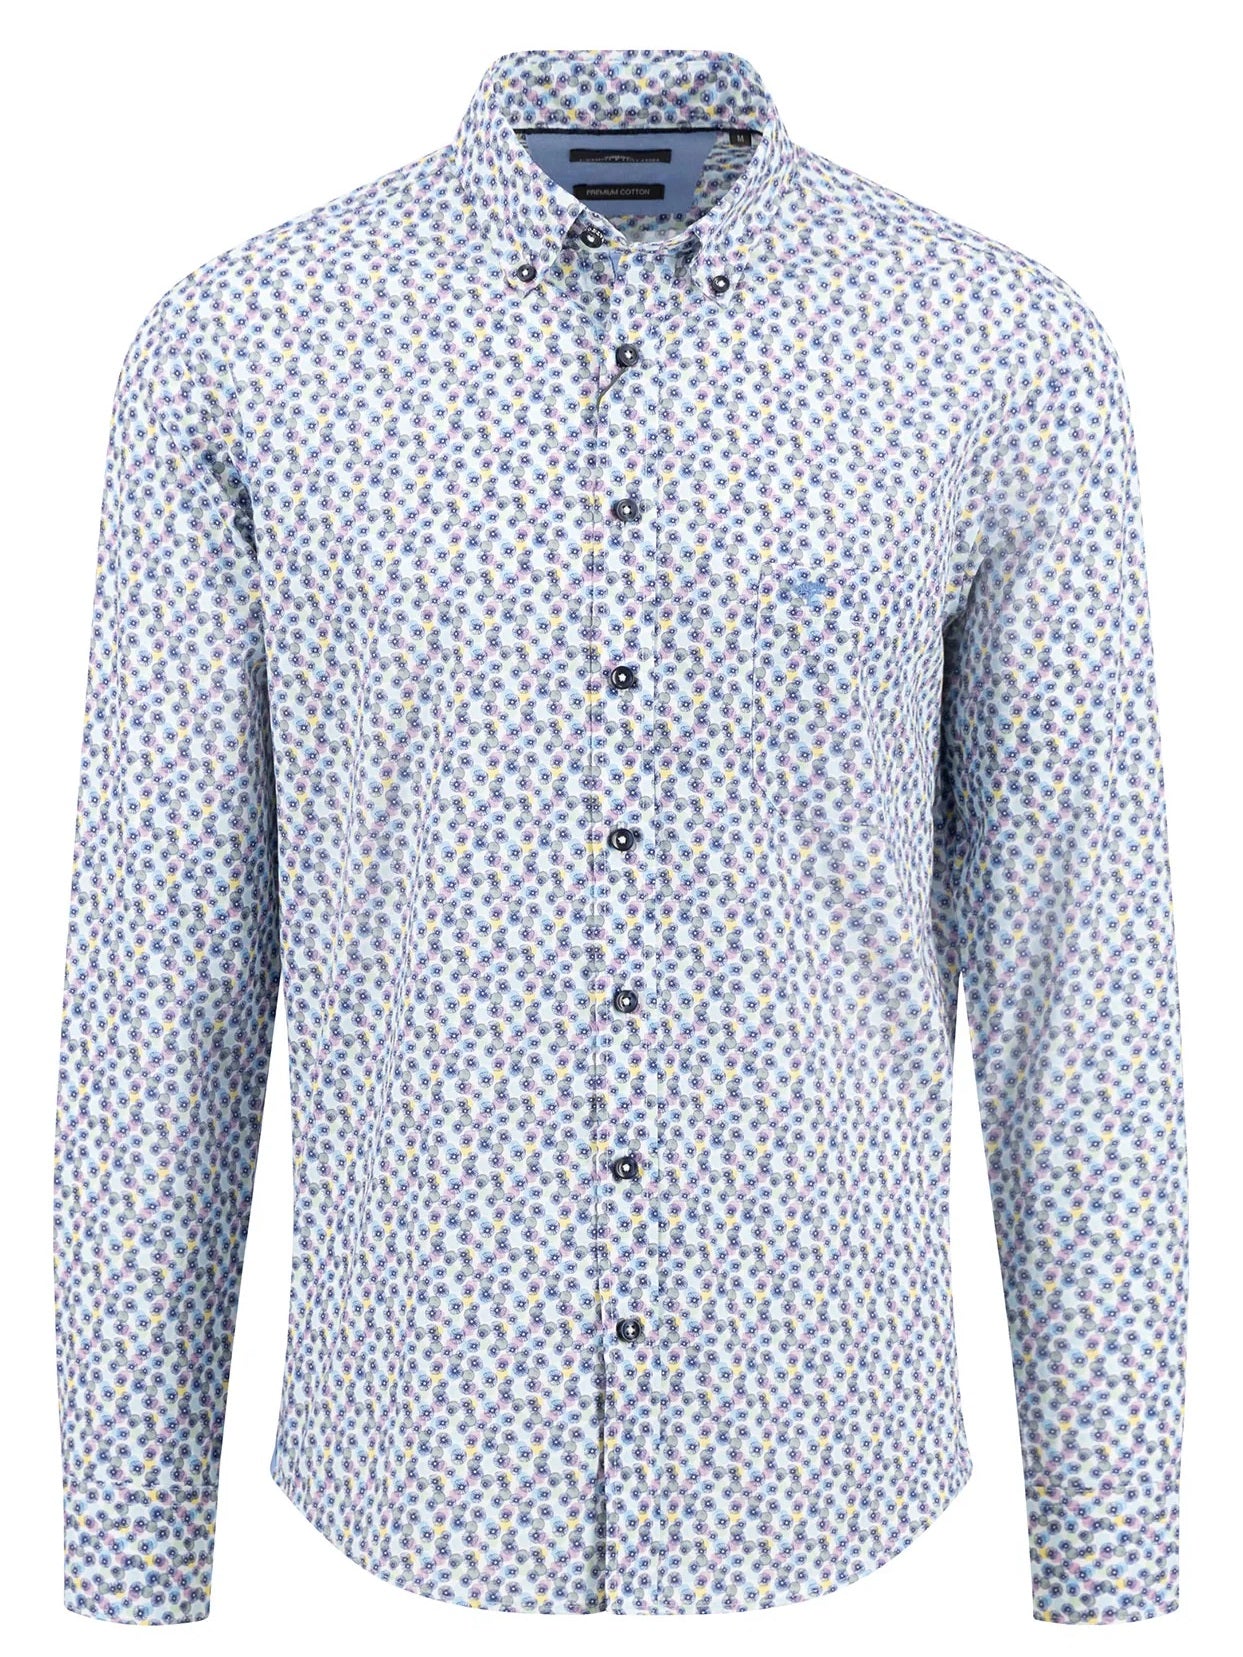 FYNCH HATTON Floral Print Shirt - Men's Soft Cotton – Dusty Lavender